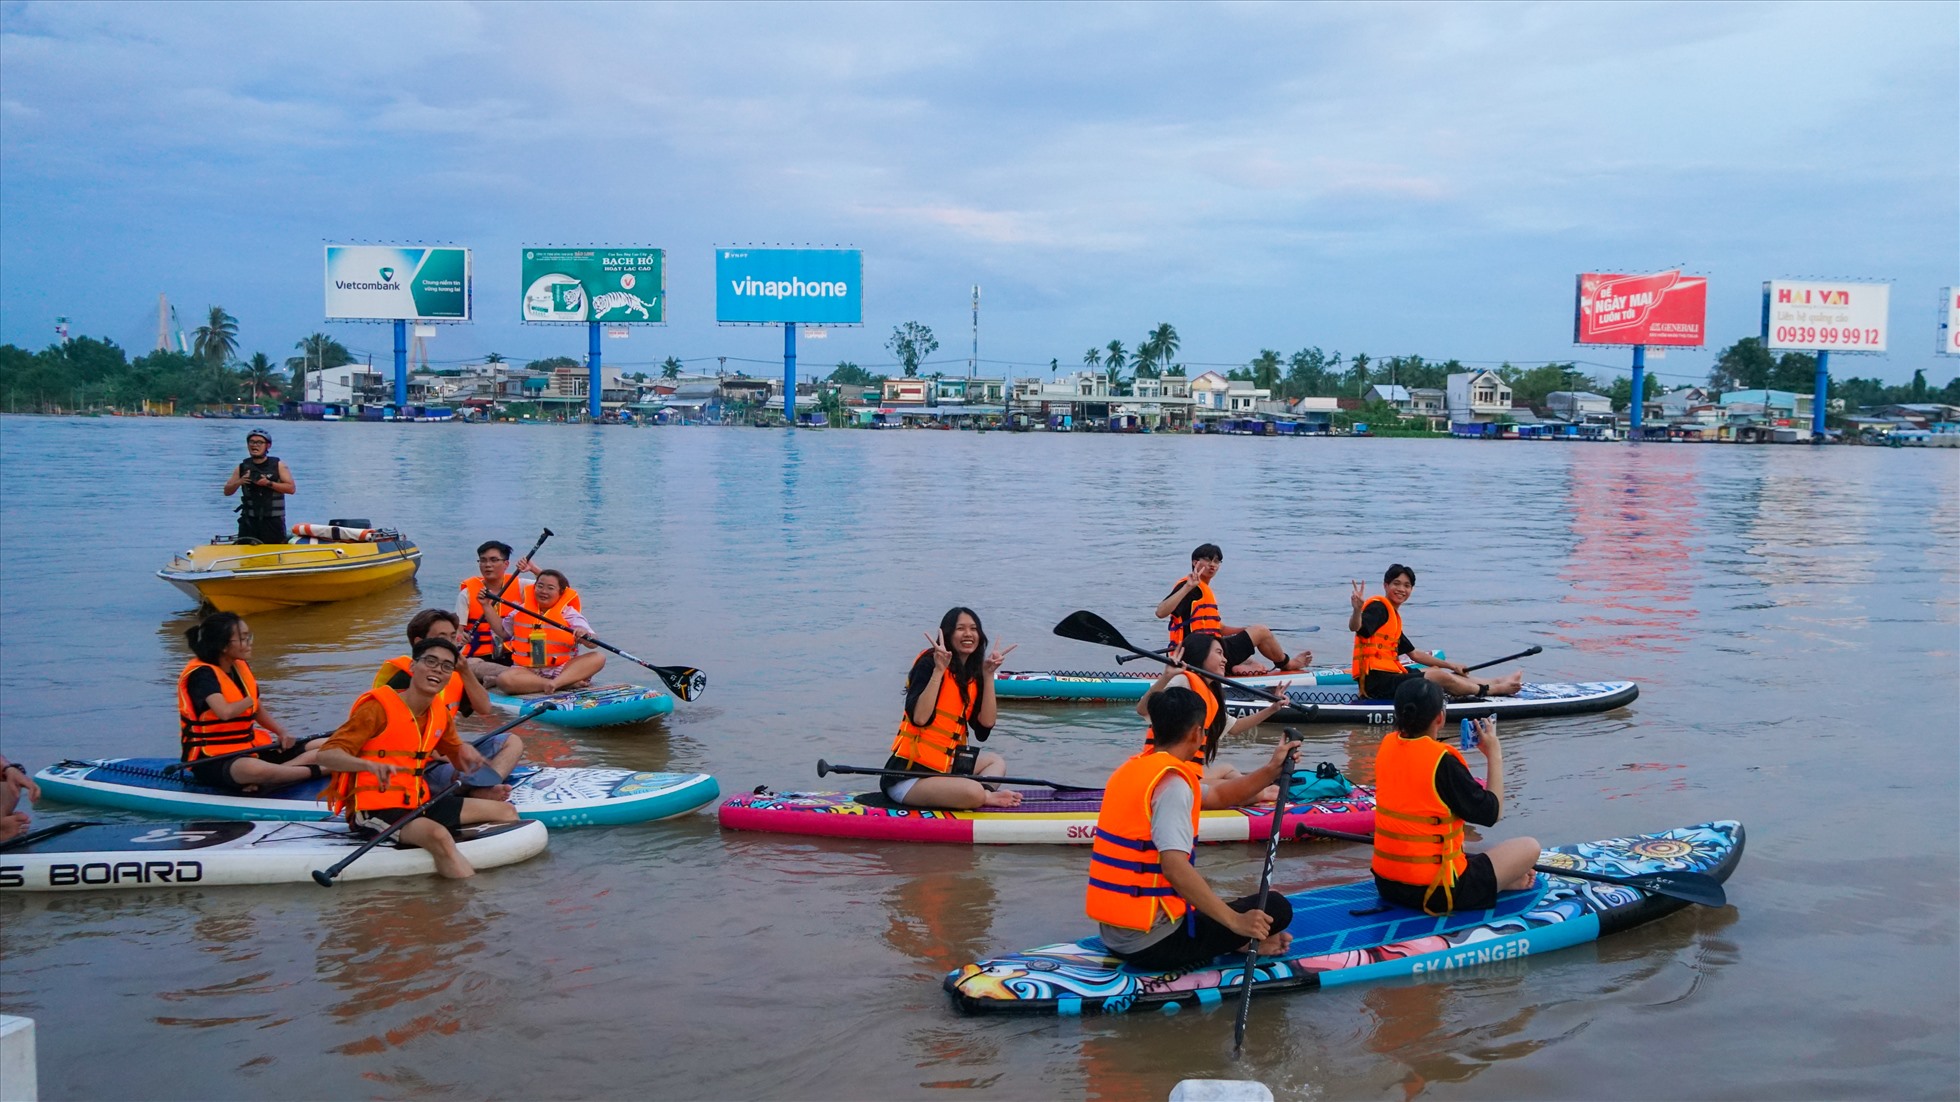 Bạn Lê Nguyễn Phúc Anh (20 tuổi, TP.Cần Thơ) cho biết, nhóm chuẩn bị 10 thuyền Sup, cùng 13 thành viên tham gia chèo thuyền xung quanh tuyến đường ngập ở Bến Ninh Kiều để ngắm phố phường.